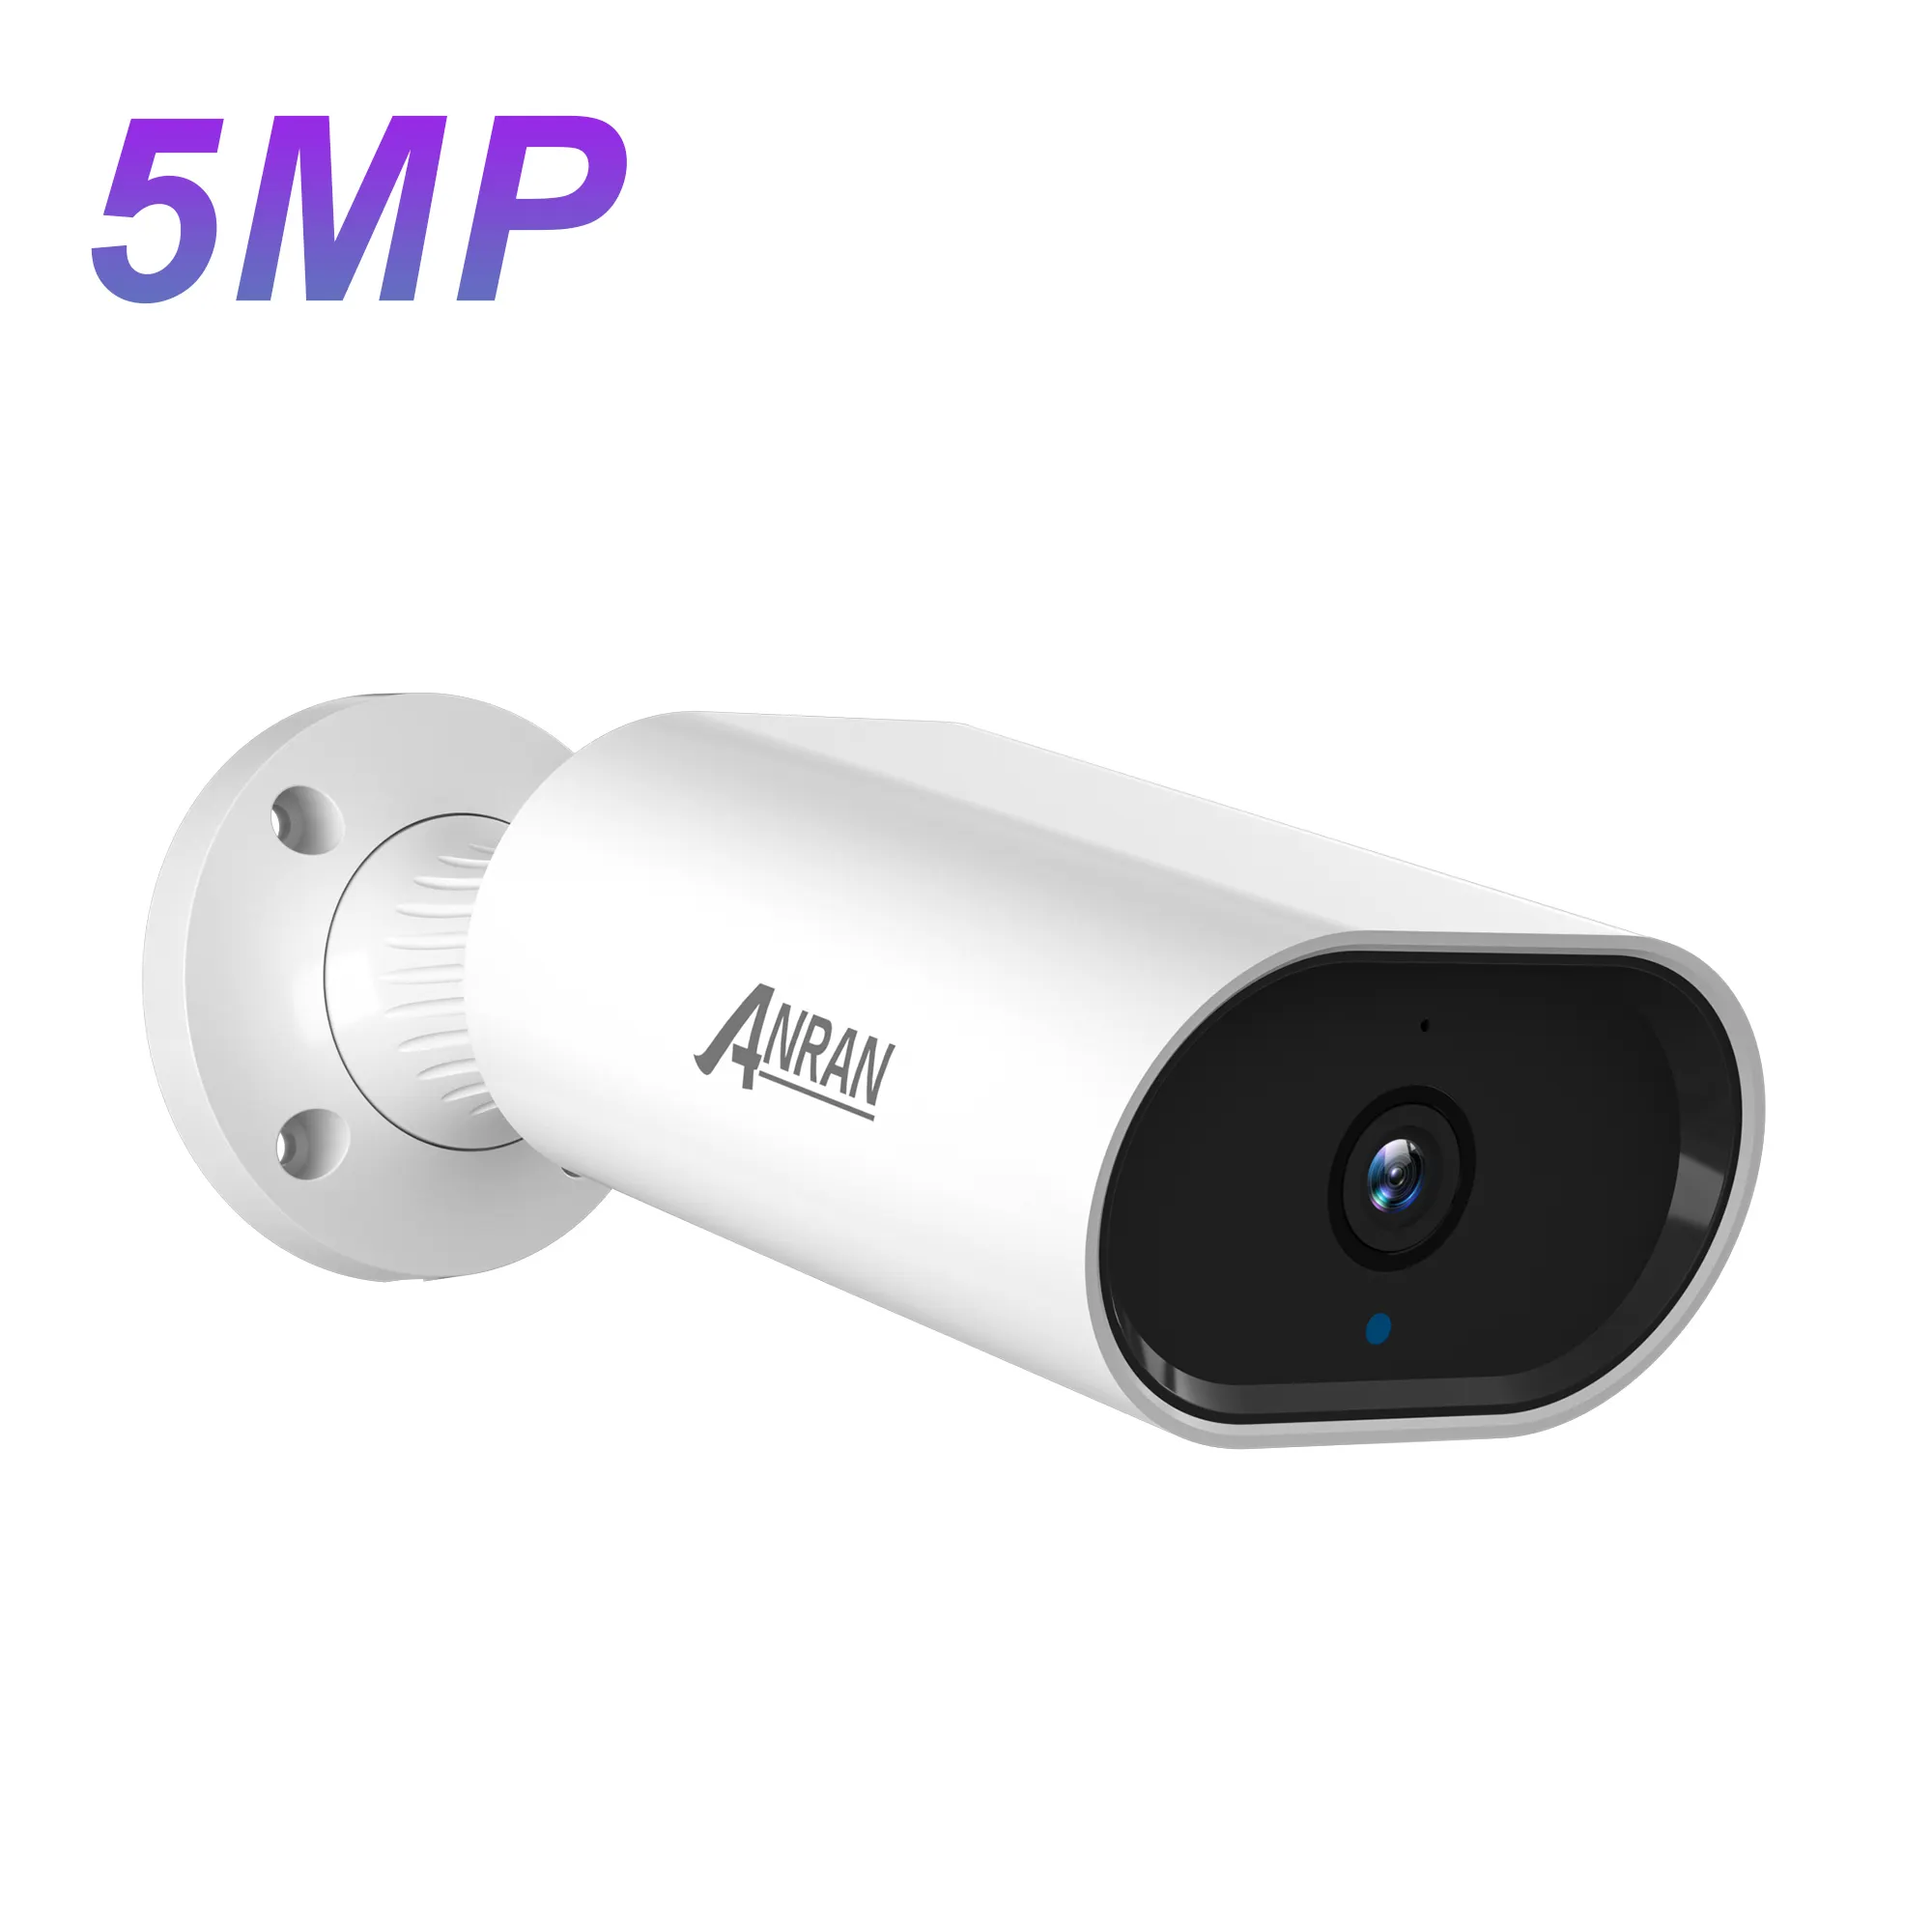 Câmera de segurança externa residencial ANRAN, à prova d' água ip65 5mp hd poe com microfone embutido, visão noturna, acesso remoto e bala